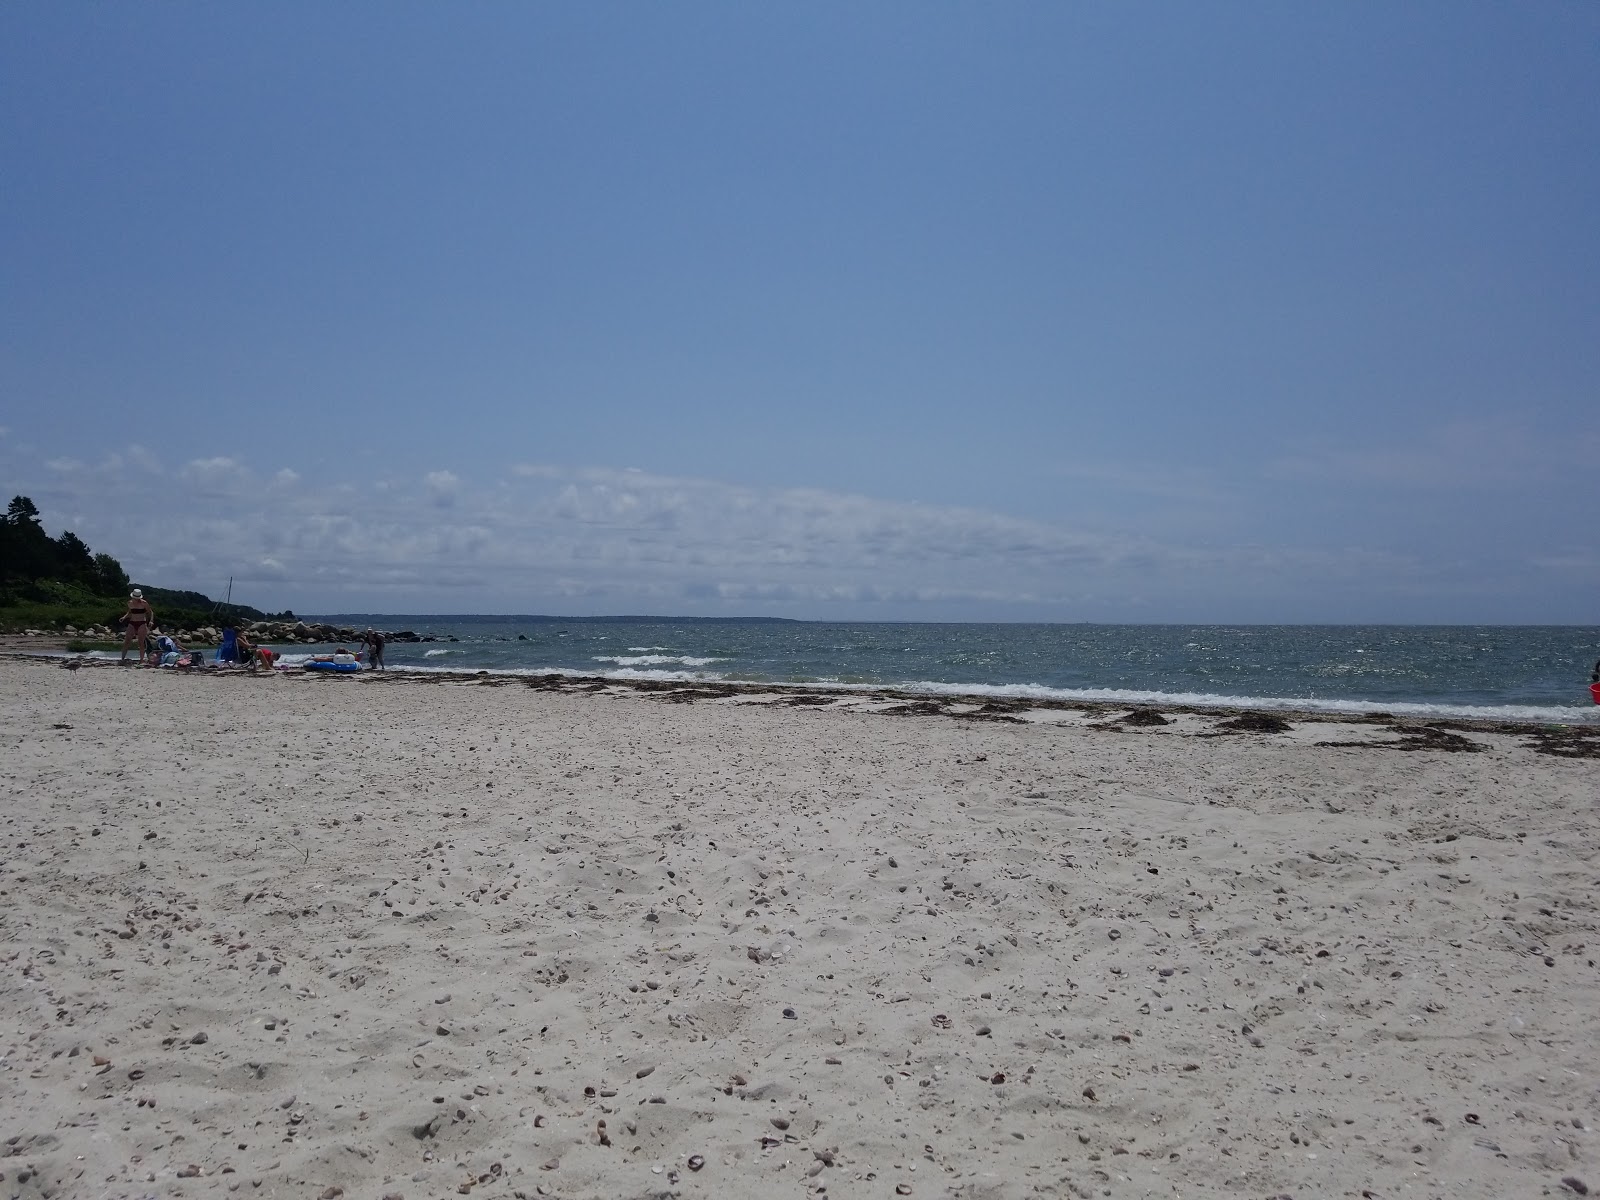 Little Harbor Beach'in fotoğrafı geniş plaj ile birlikte